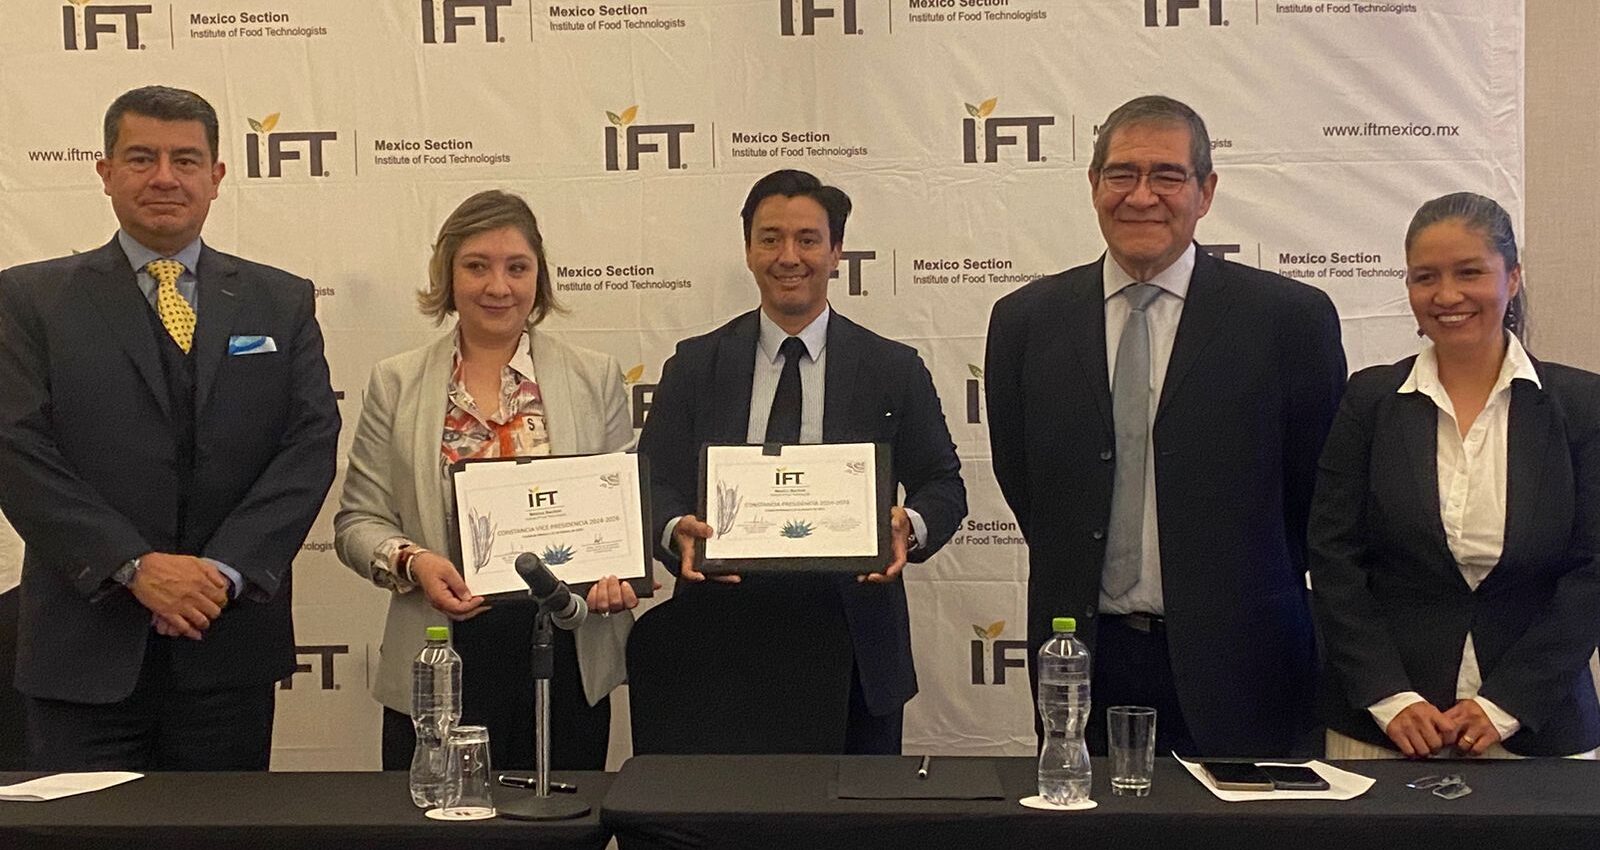 IFT Mexico Section es un organismo exclusivo para los profesionales de la industria de alimentos y bebidas en México